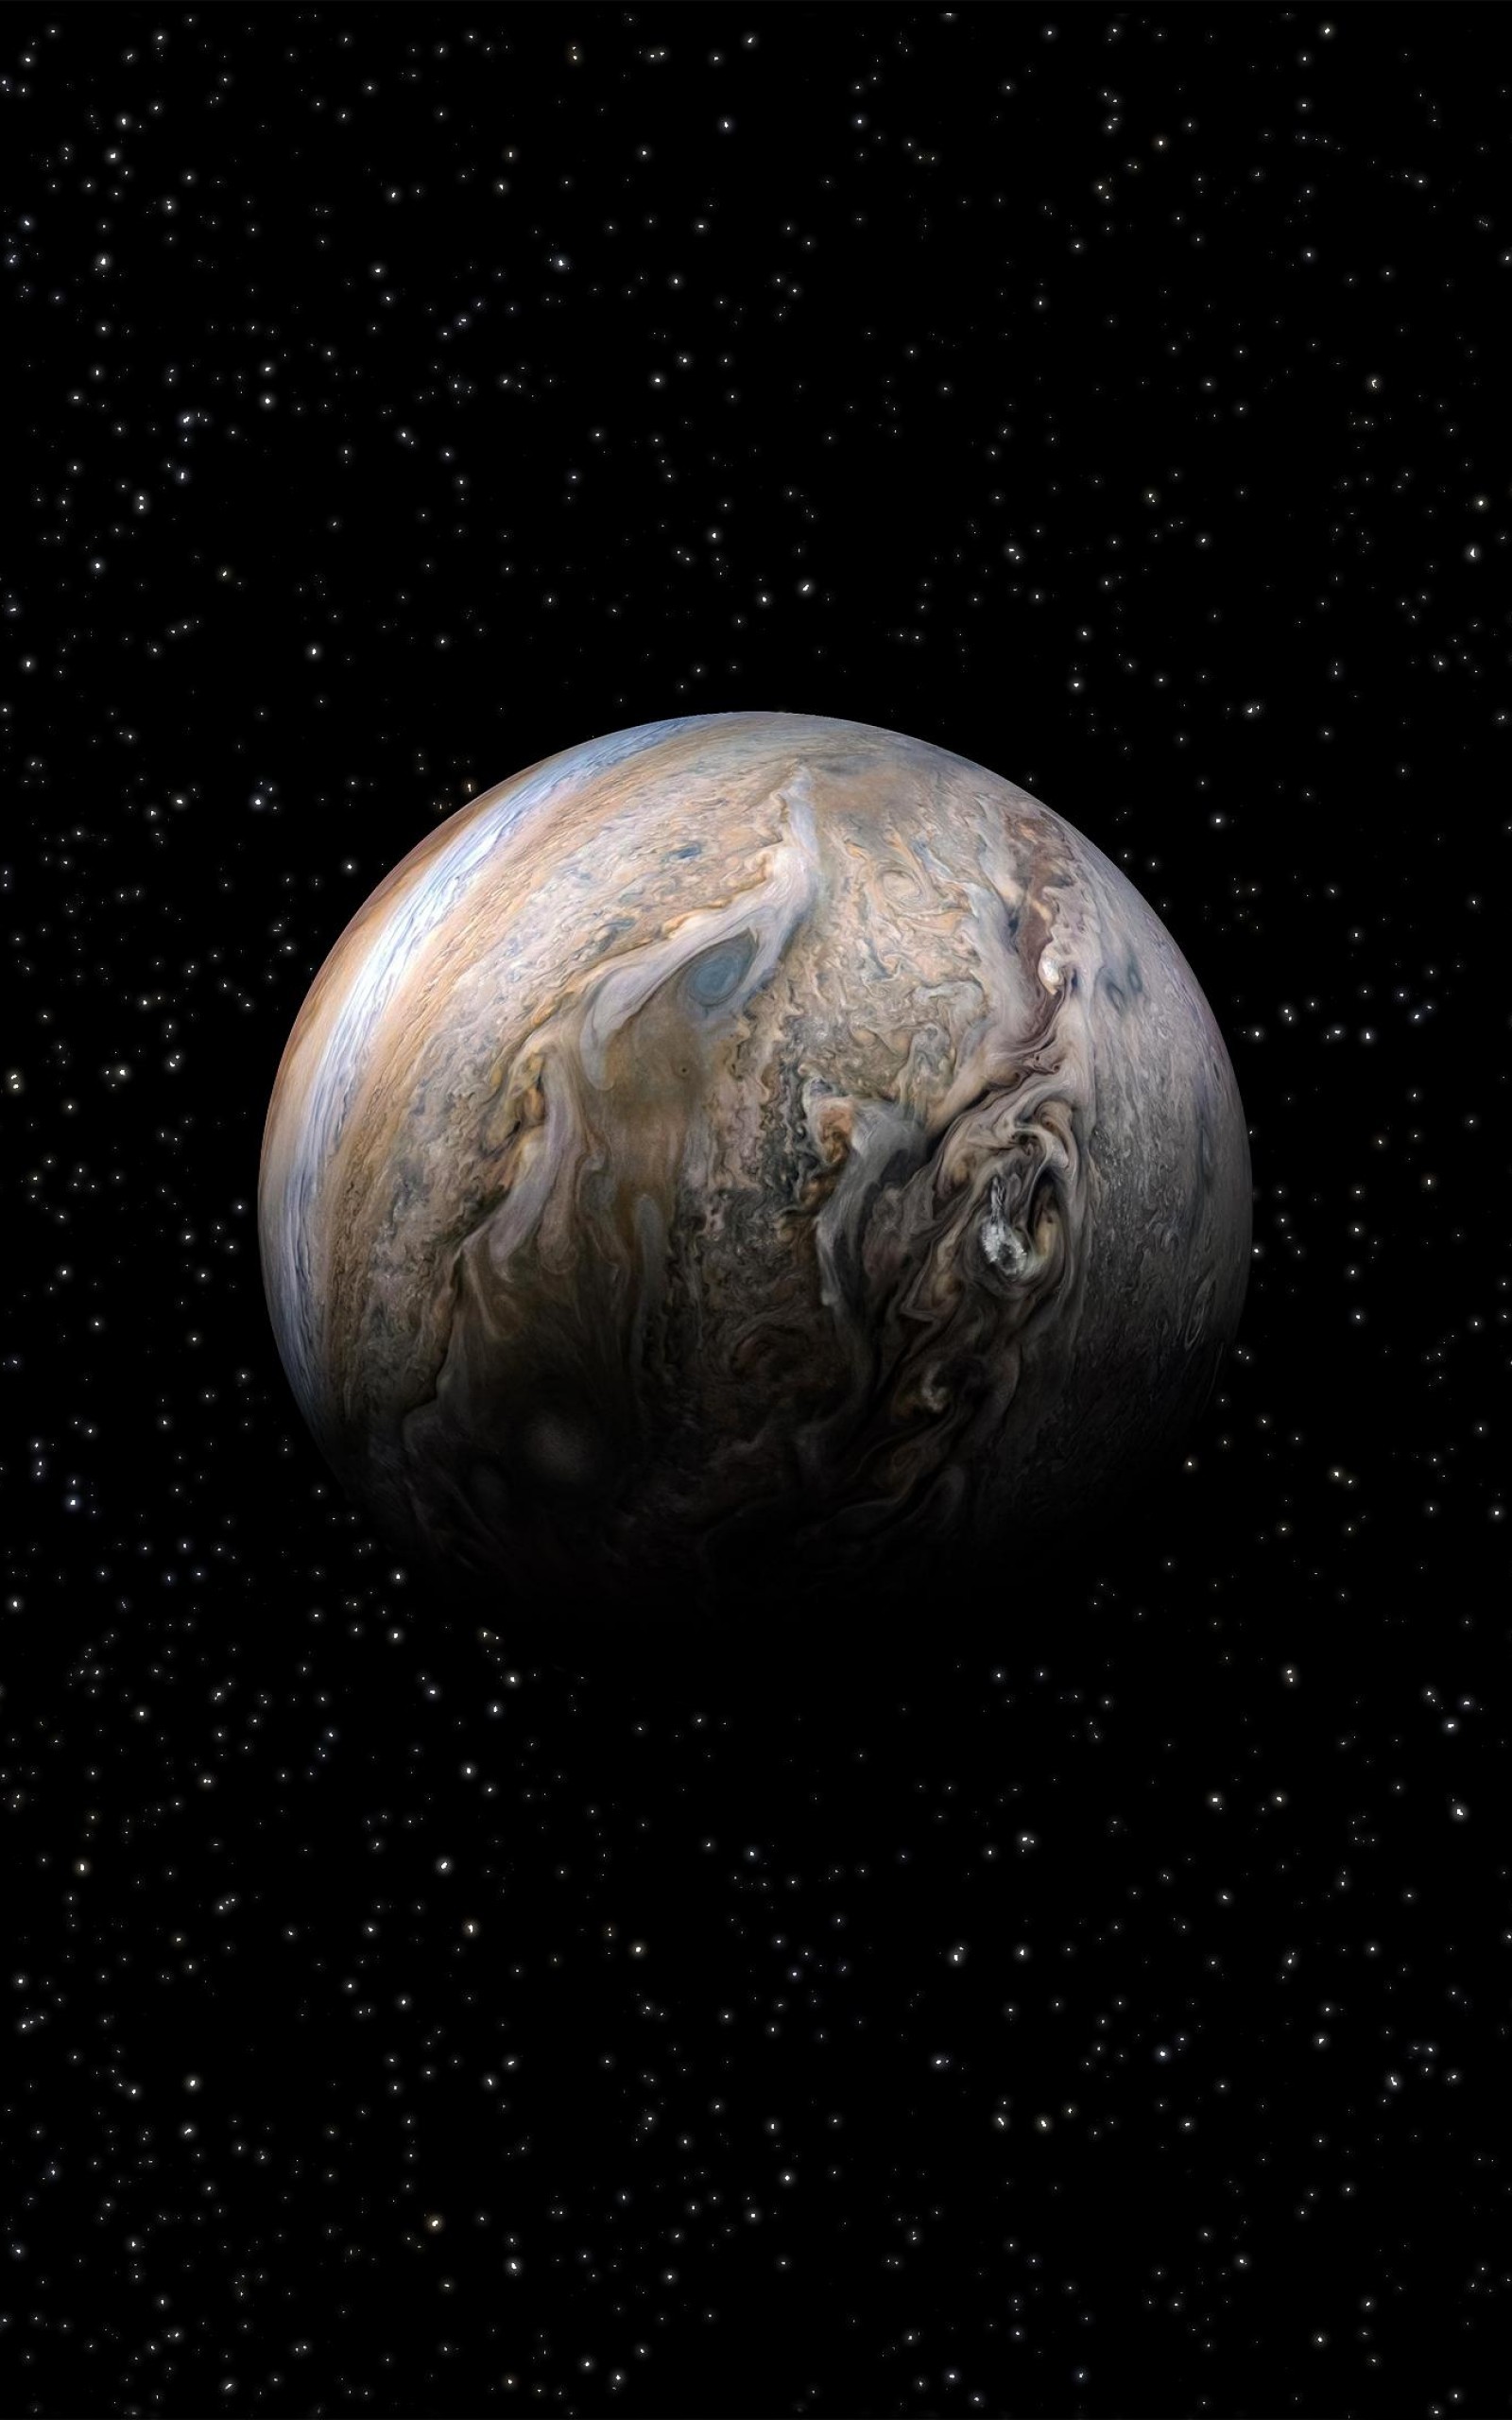 Jupiter, Galaxy, Stars, Planet - Kevin M Gill Nasa Jpl Caltech Swri Msss - HD Wallpaper 